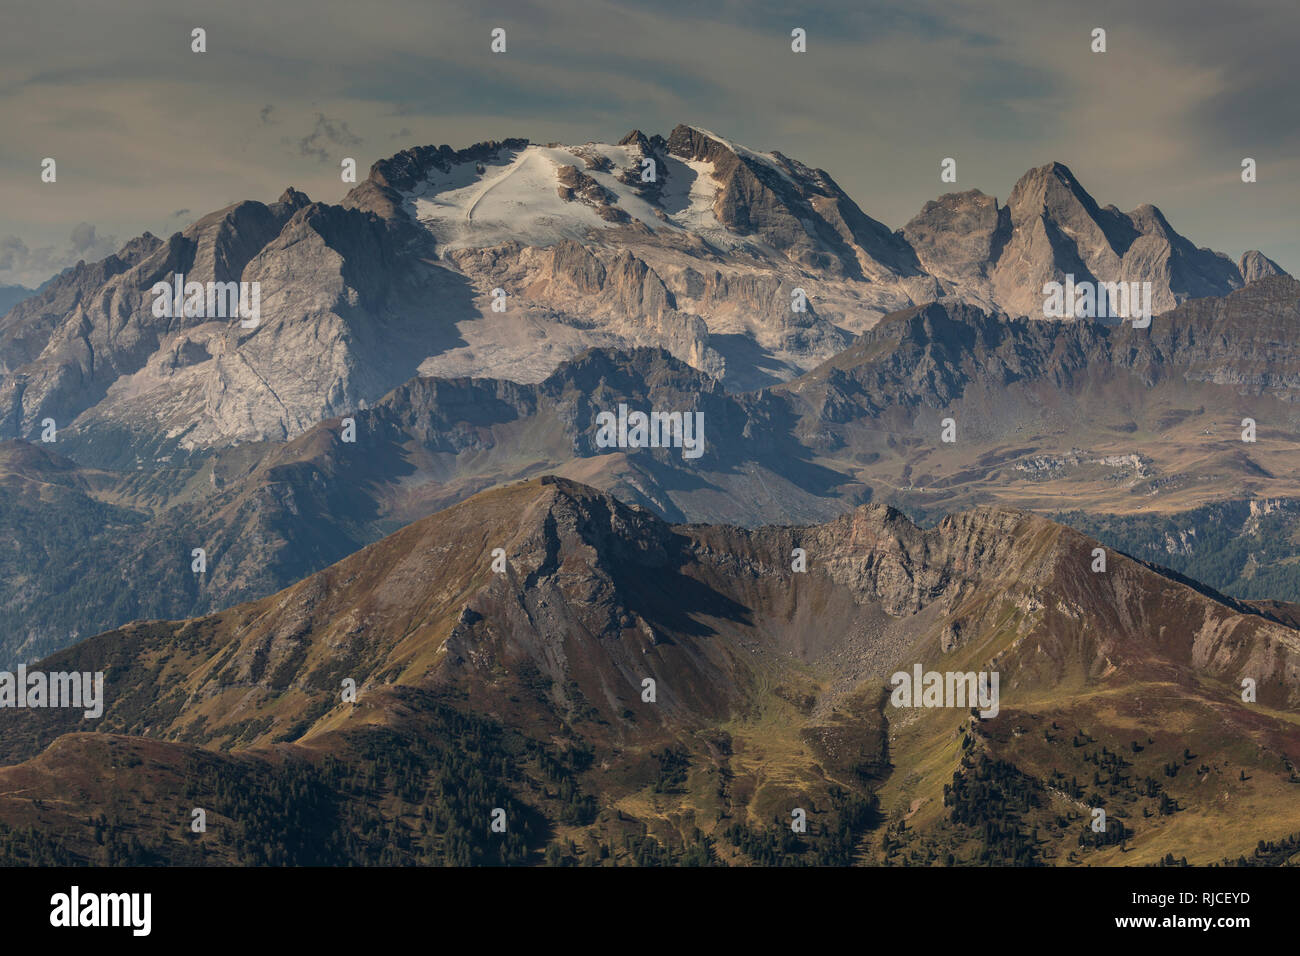 Europe, Italy, Alps, Dolomites, Mountains, View from Lagazuoi Stock Photo